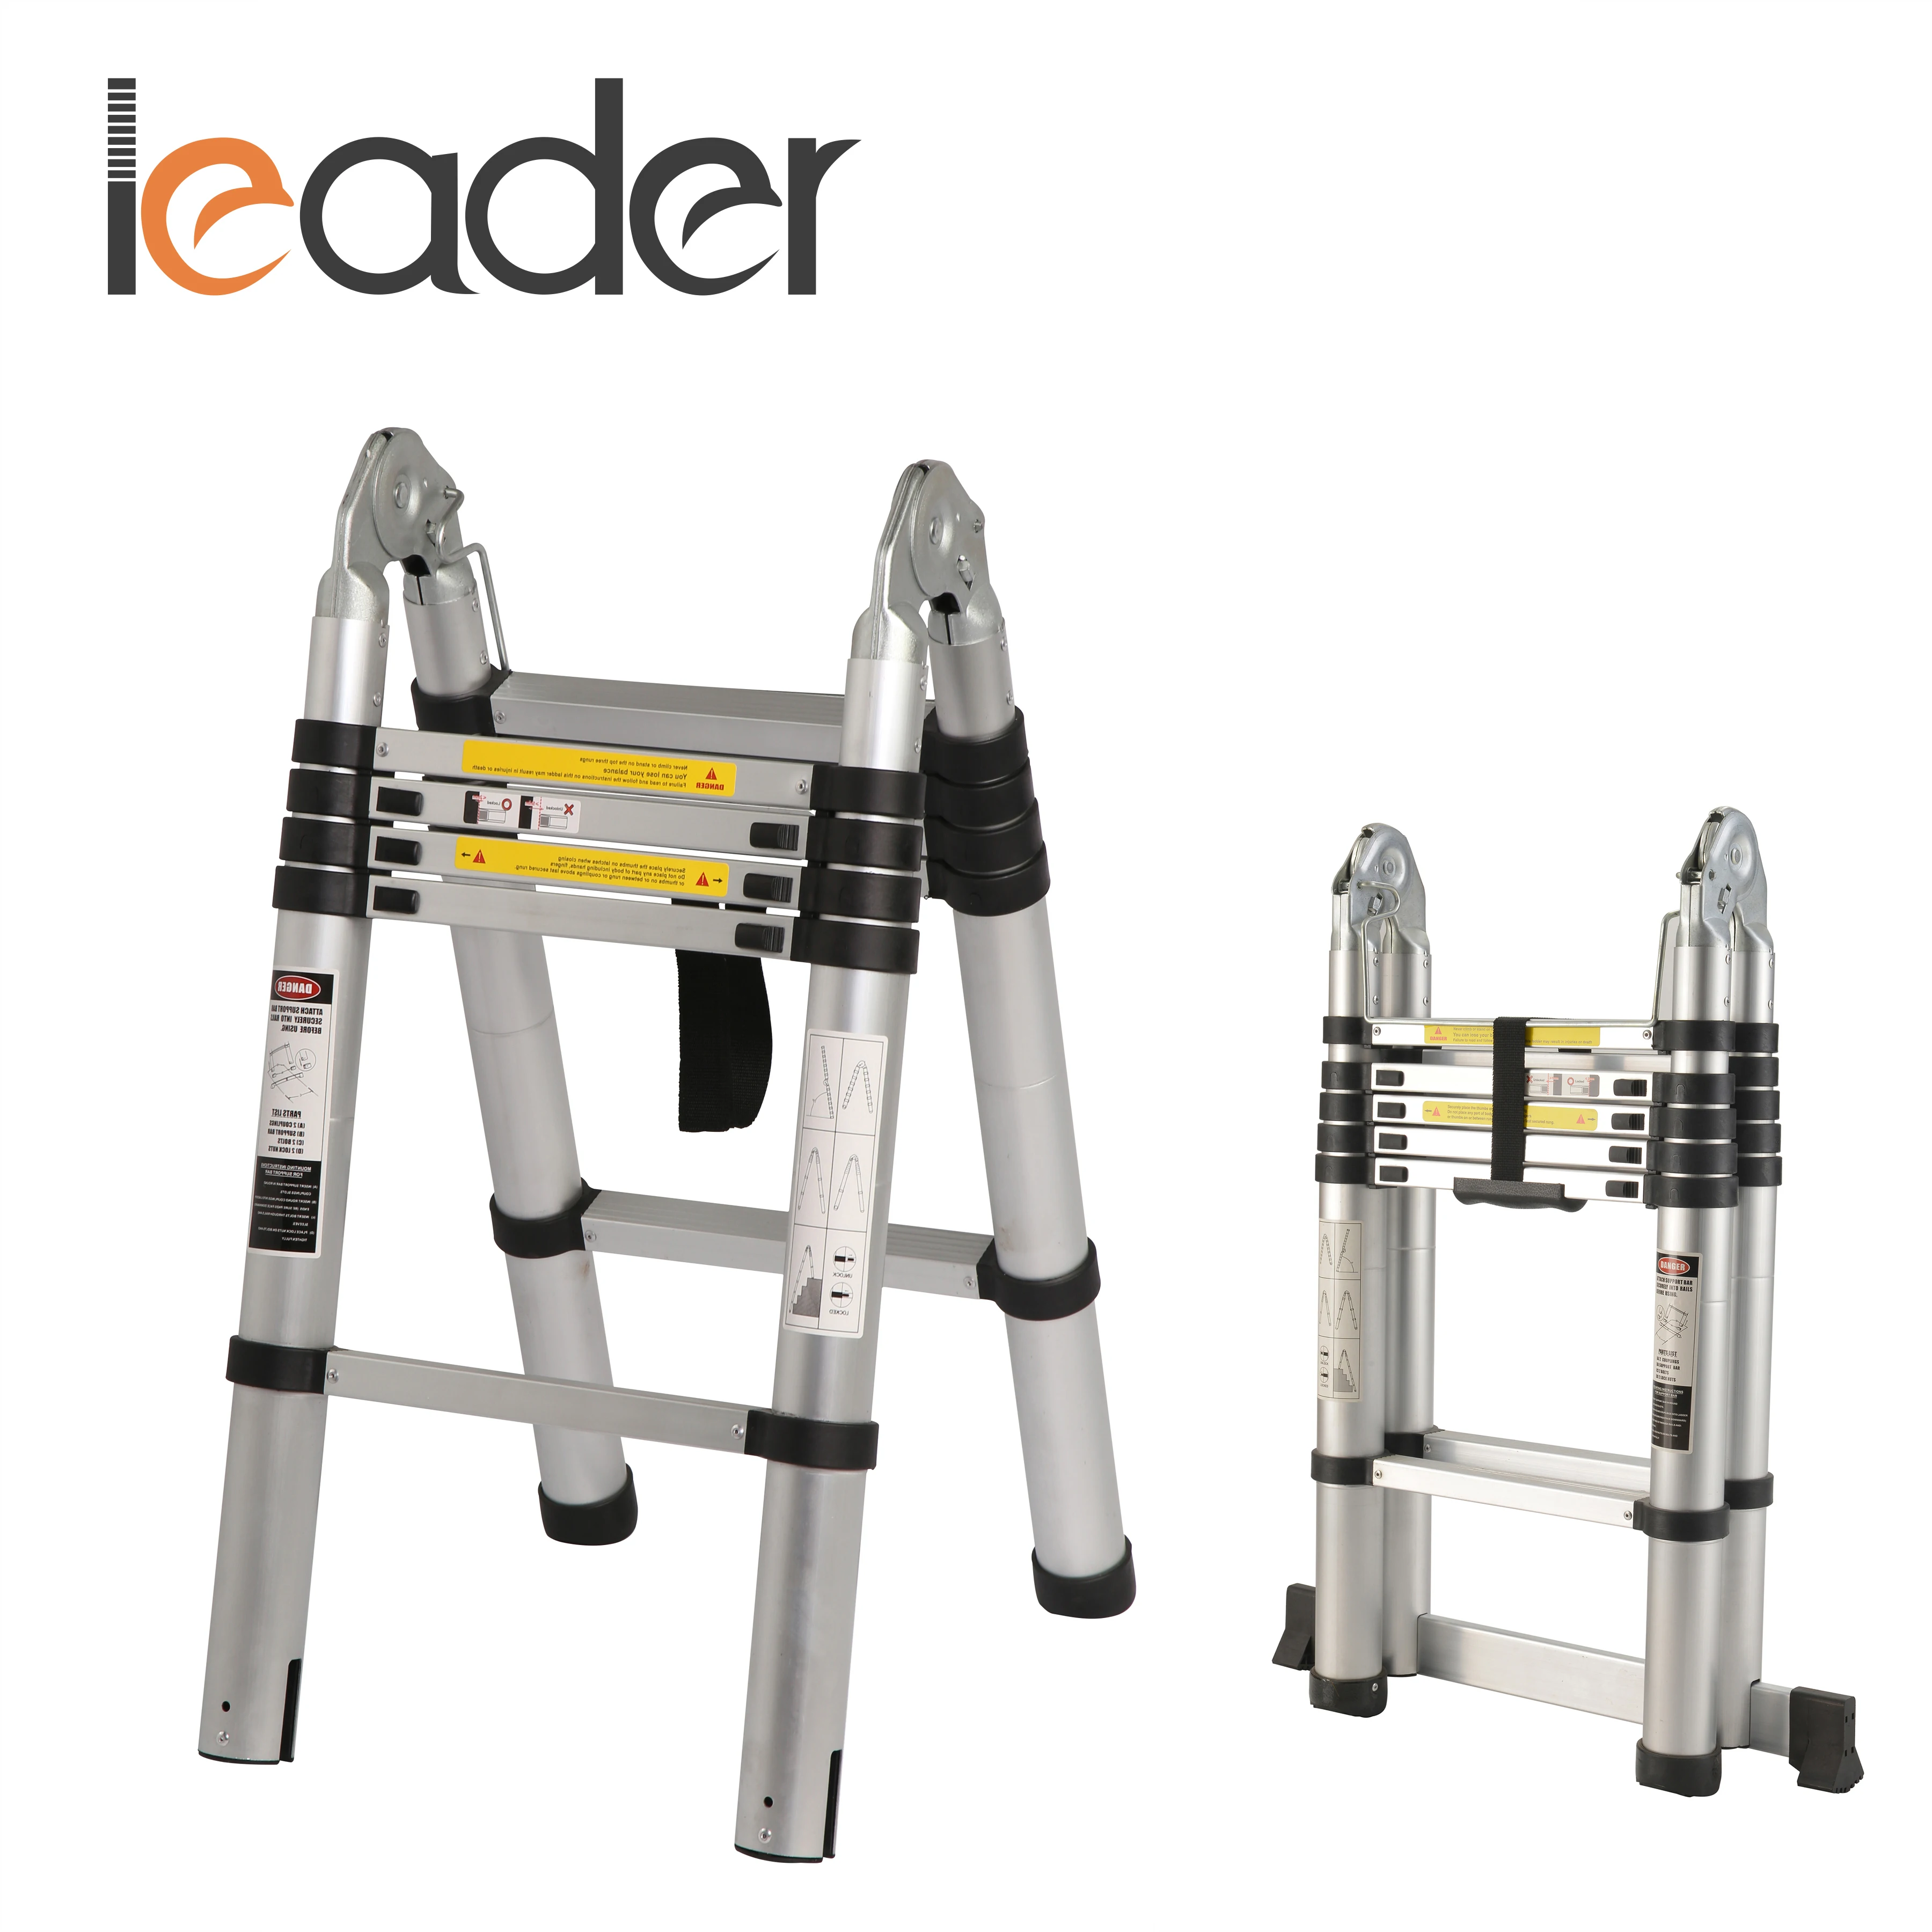 
Aluminum telescopic step multipurpose ladders 